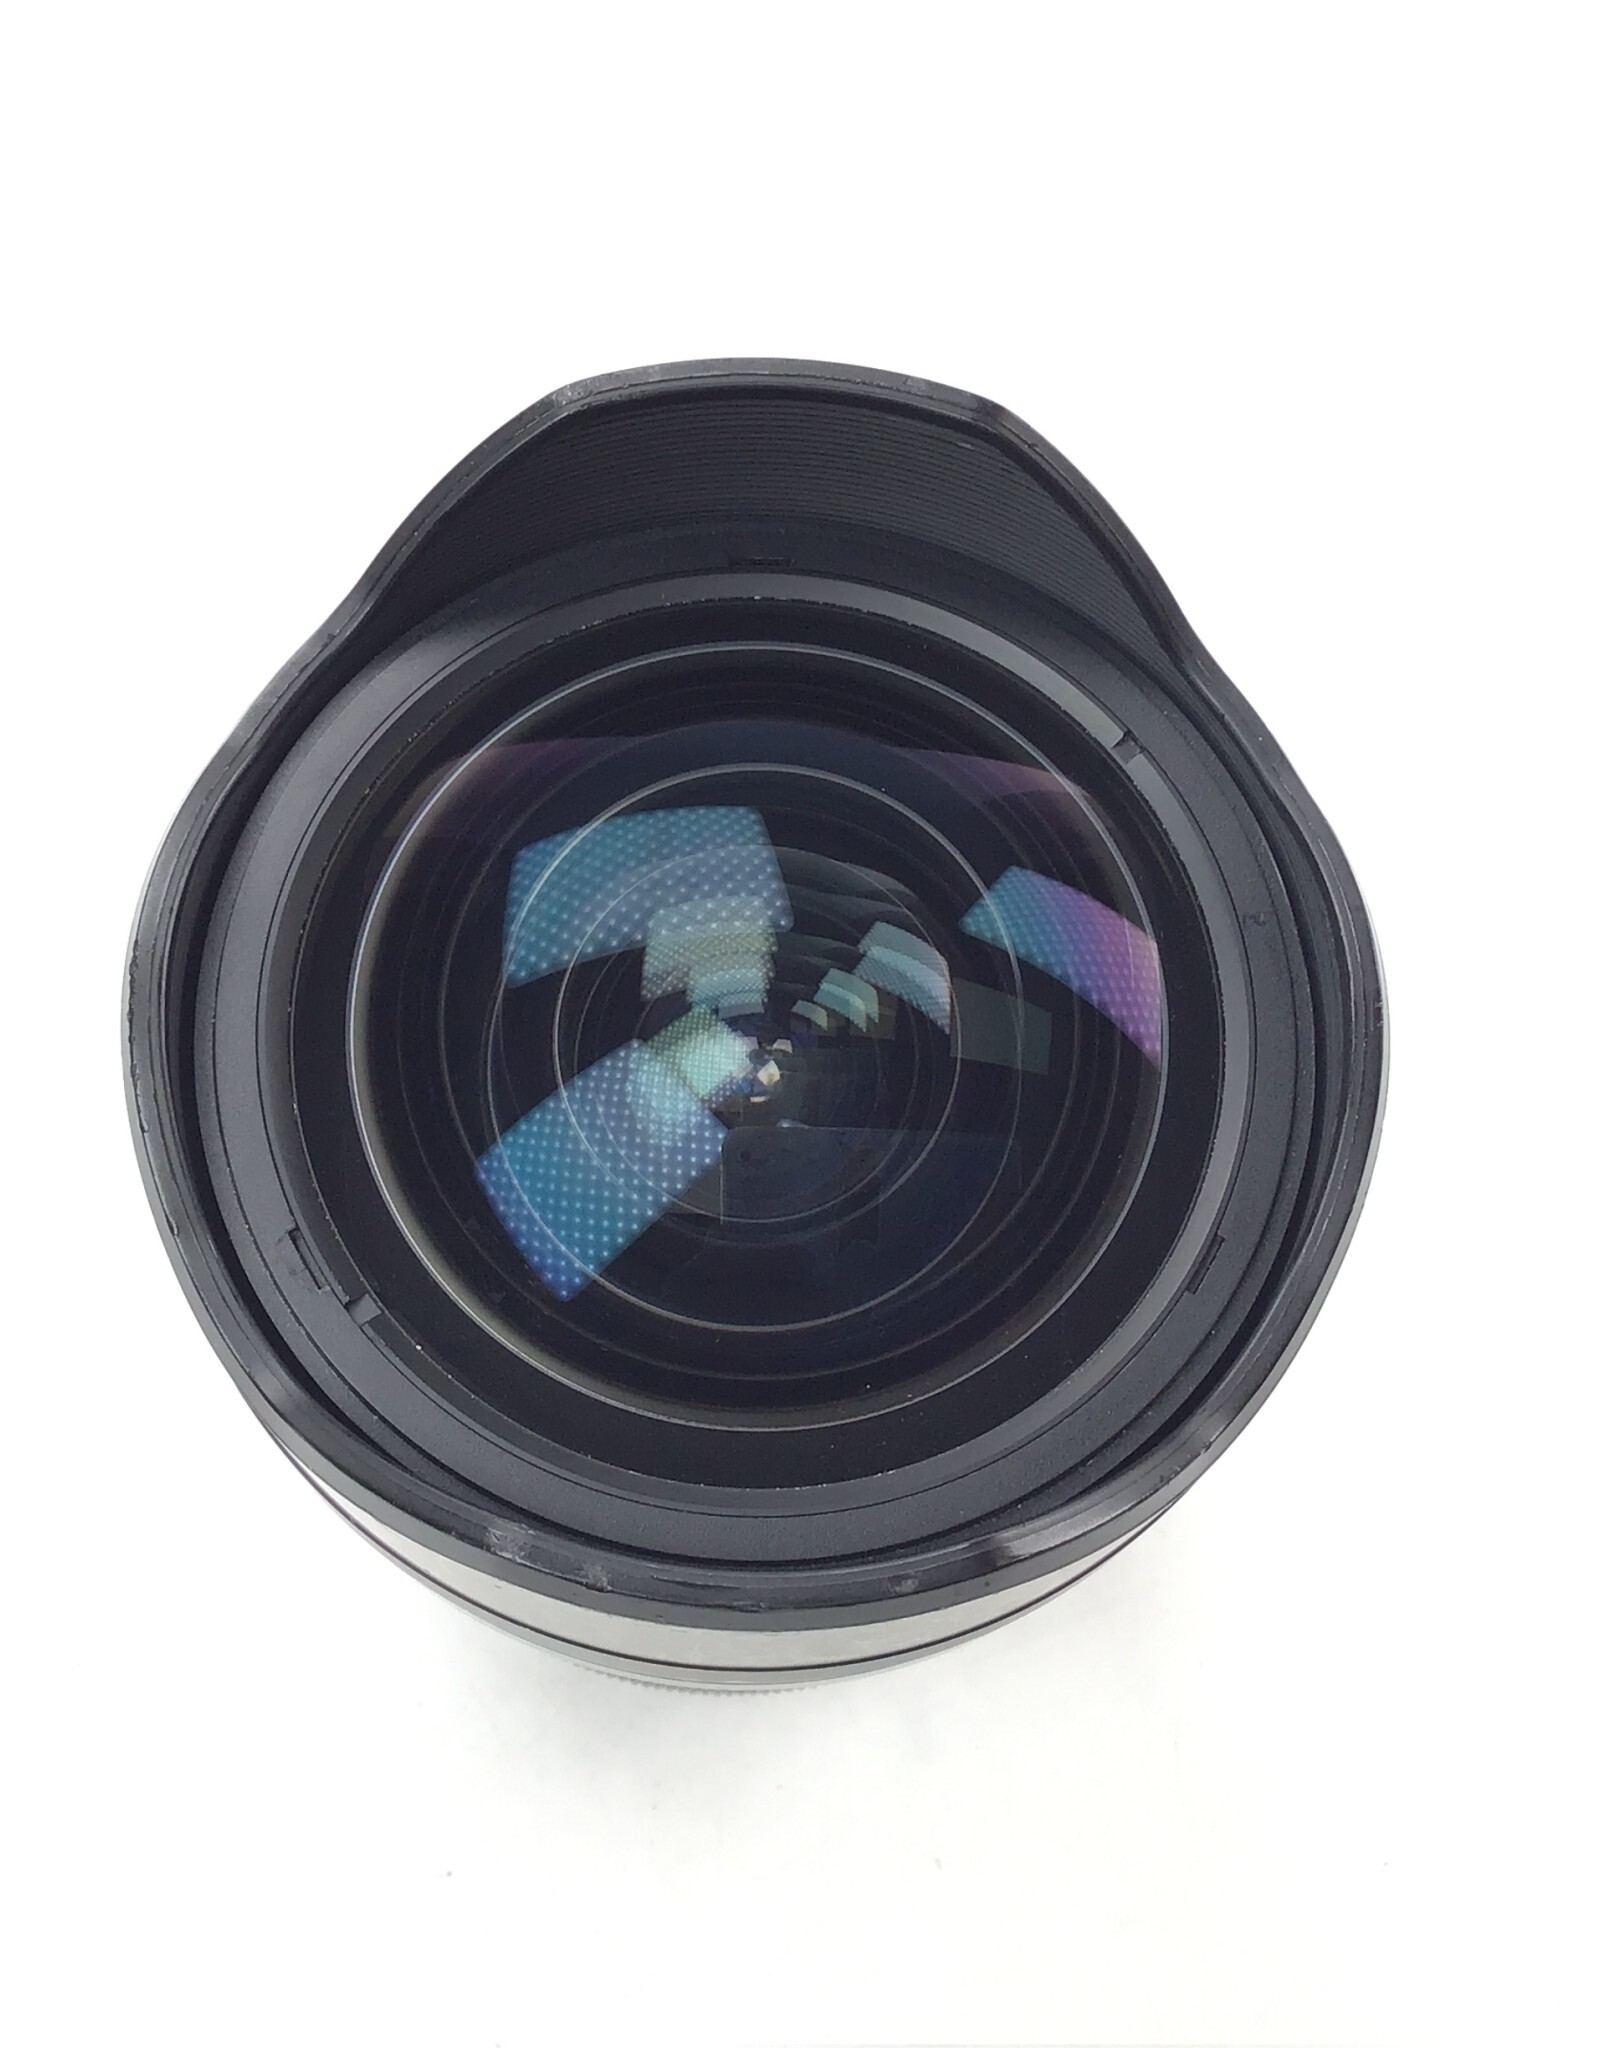 OLYMPUS Olympus M Zuiko 7-14mm f2.8 Pro Lens Used Fair